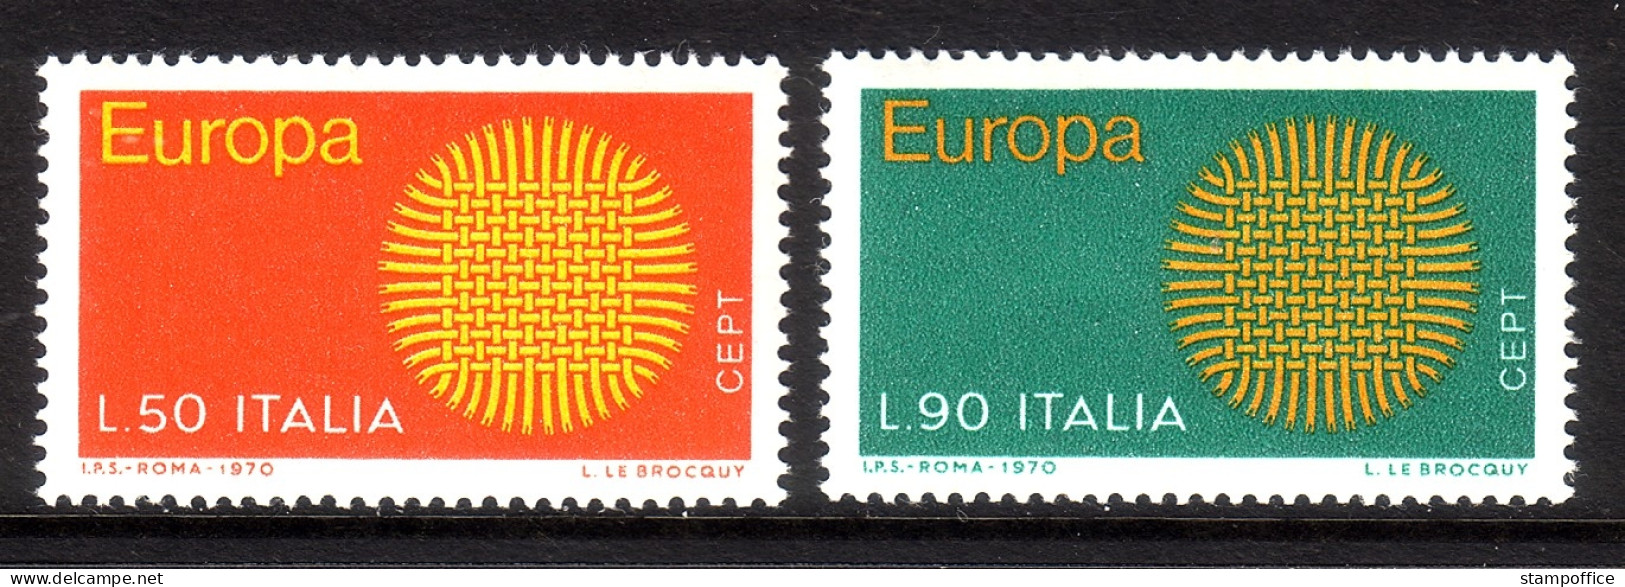 ITALIEN MI-NR. 1309-1310 POSTFRISCH(MINT) EUROPA 1970 SONNENSYMBOL - 1970